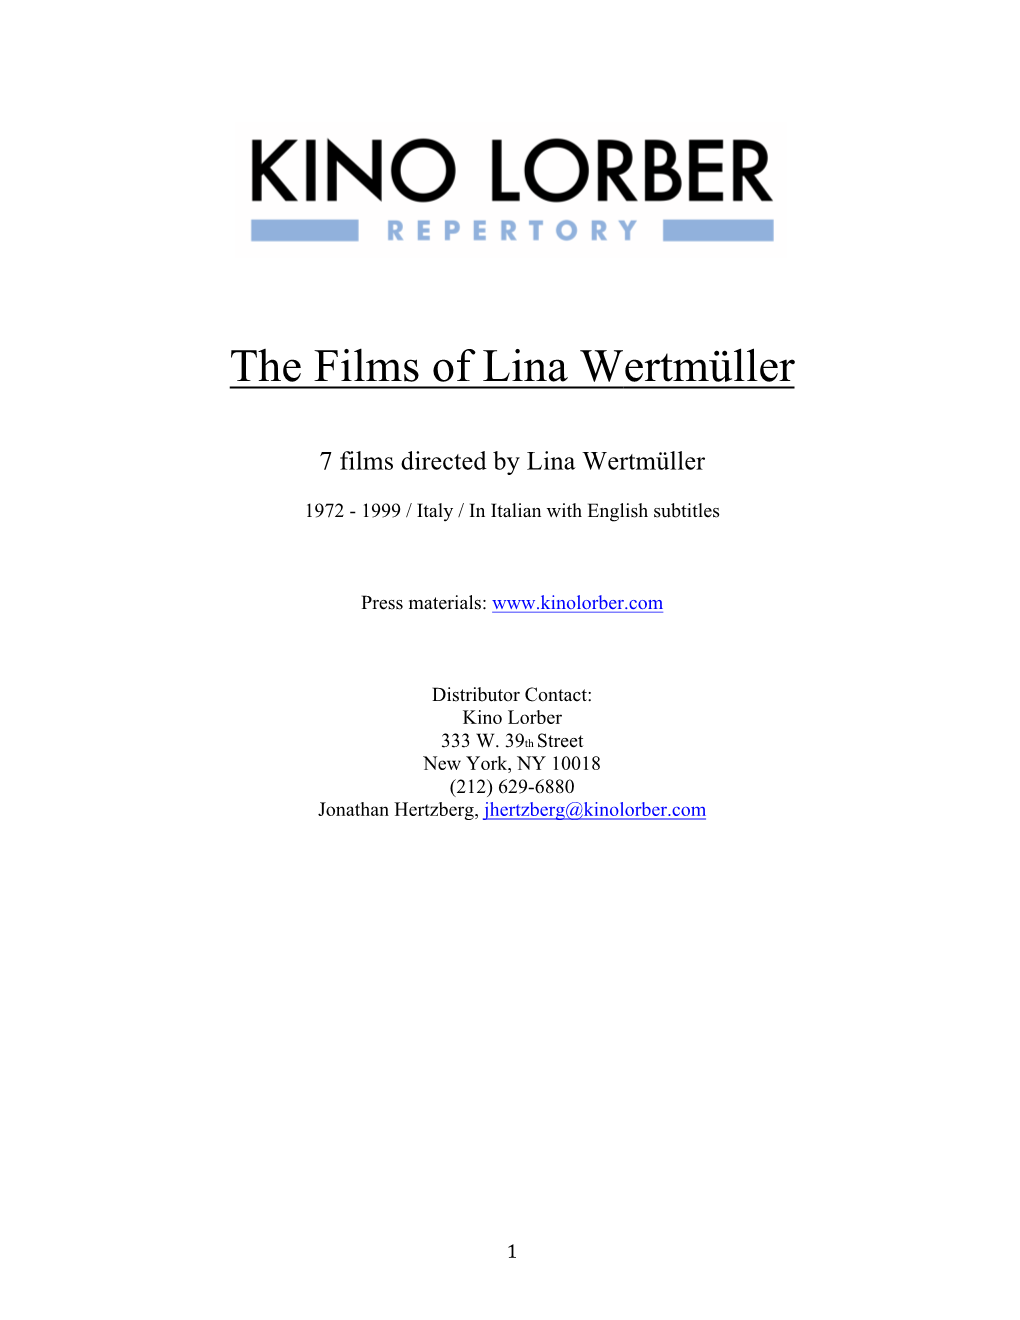 The Films of Lina Wertmüller